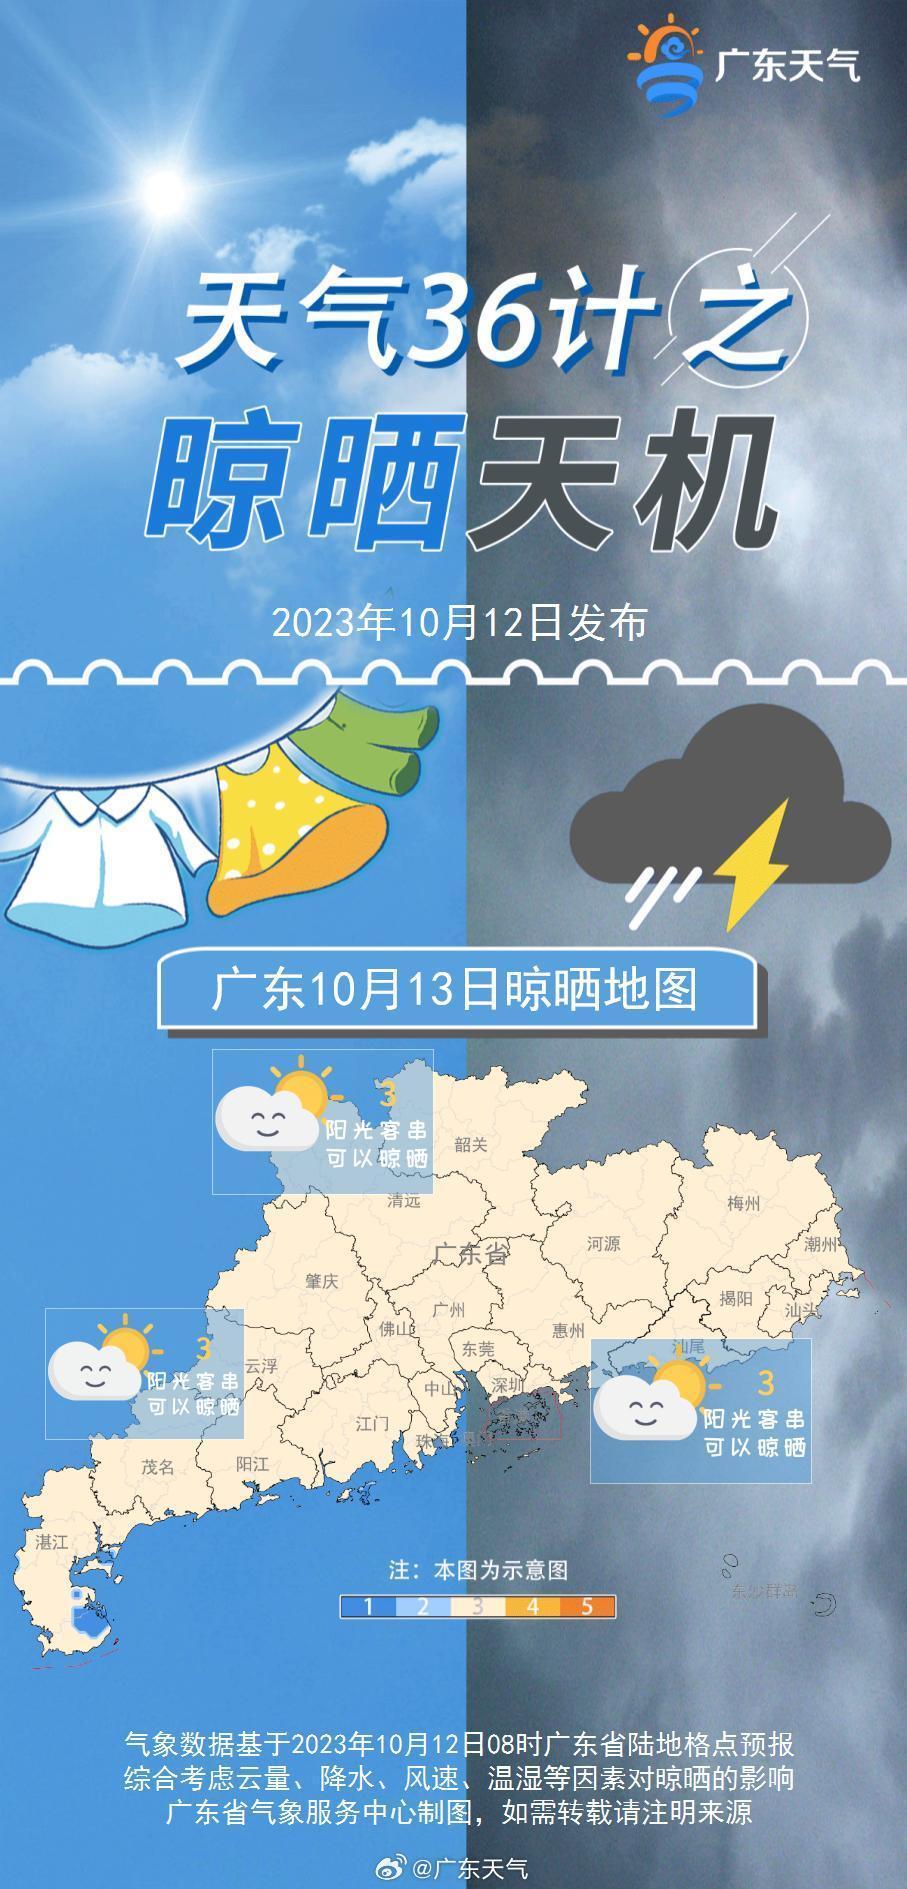 “广东断崖式降温”谣言哪来的？明明往30℃+奔跑了！8